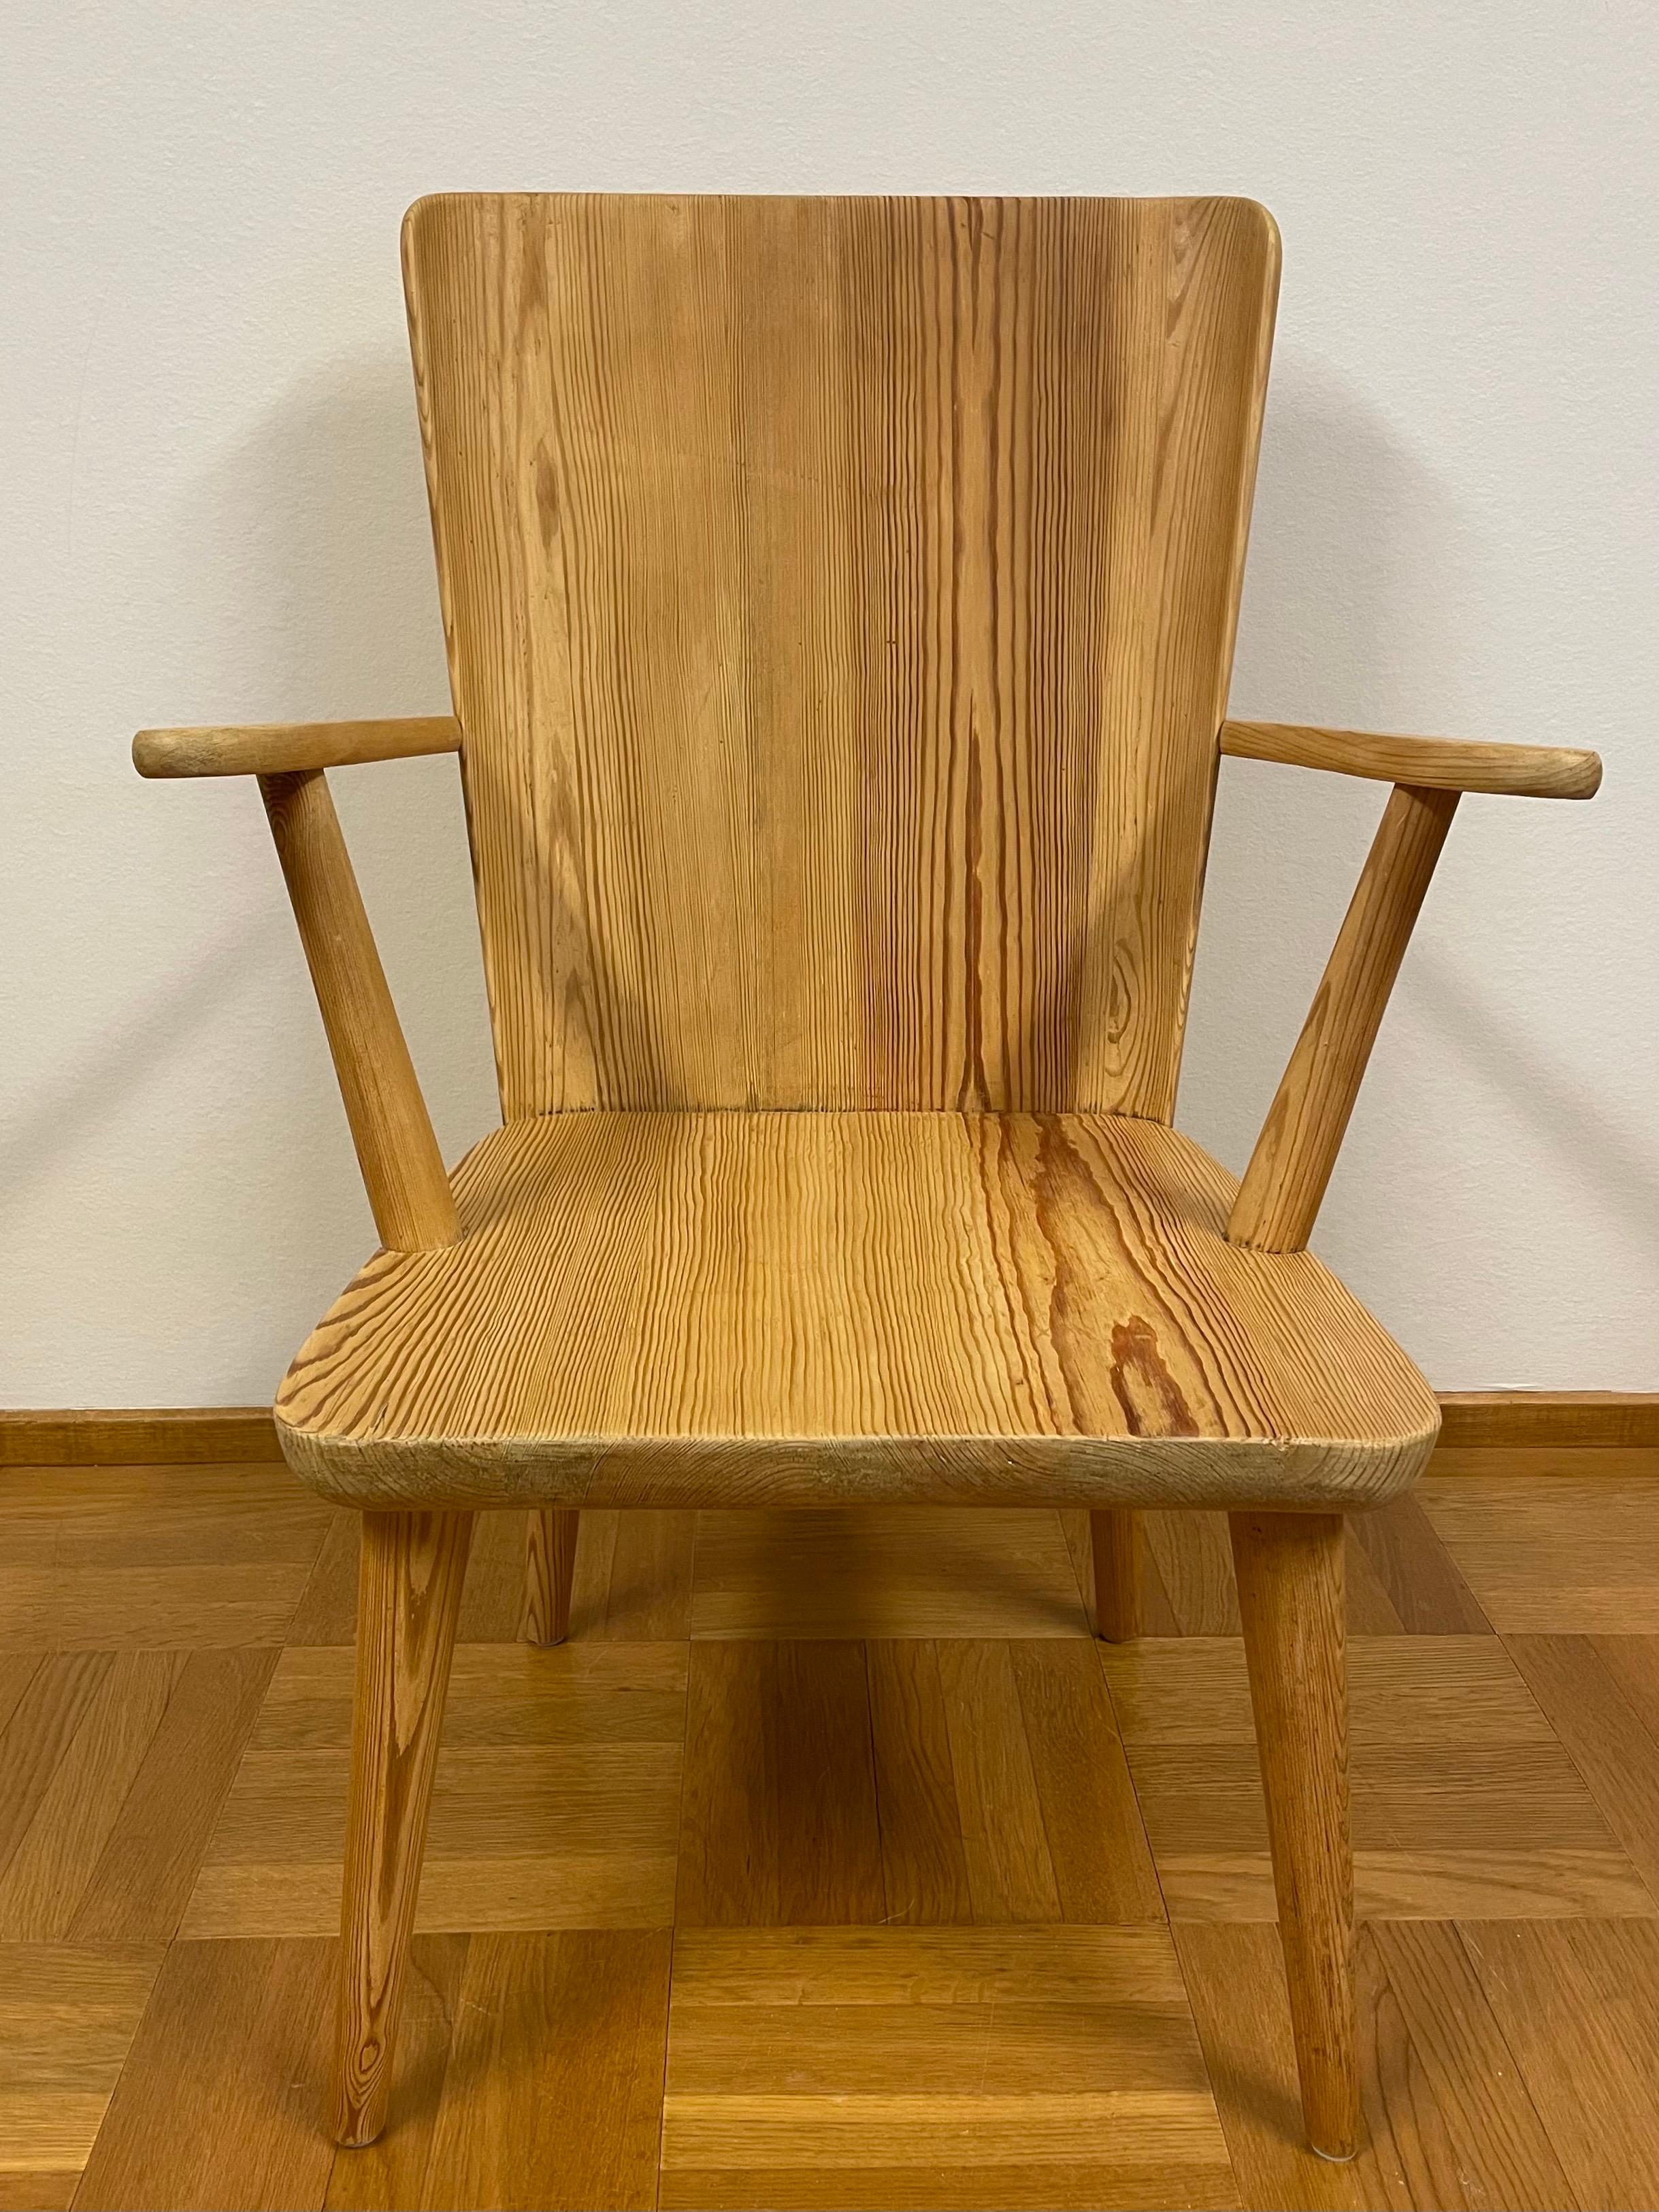 Il s'agit du fauteuil en pin suédois conçu par Göran Malmvall pour sa propre entreprise de meubles Karl Andersson & Söner. 
Il s'agit probablement d'un exemplaire ancien, datant des années 1940. 
Magnifique fauteuil en pin massif patiné, à haut